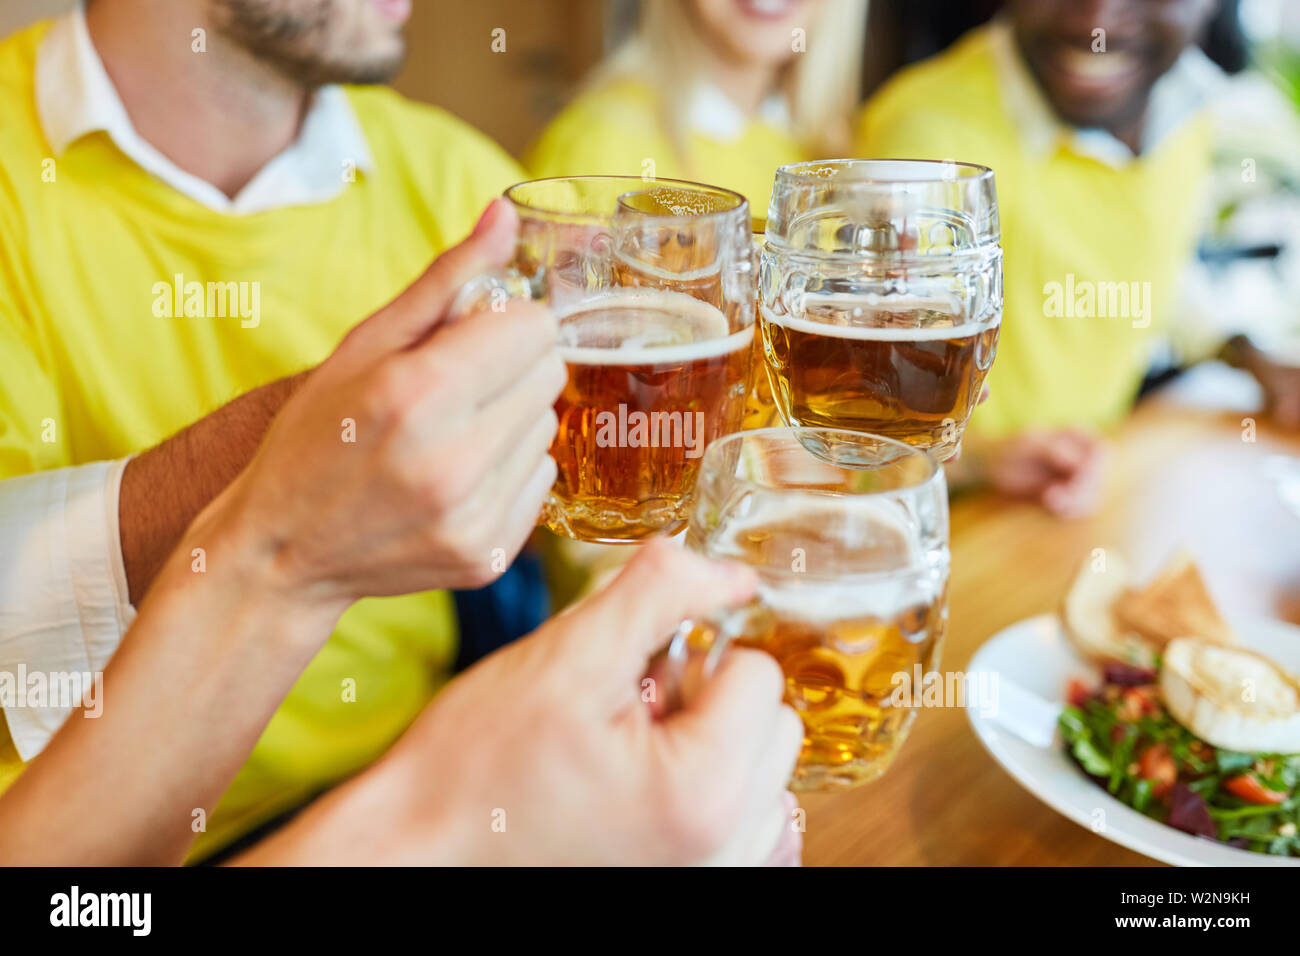 Maintenez les mains tout en verre de bière toasting dans un bar ou restaurant Banque D'Images